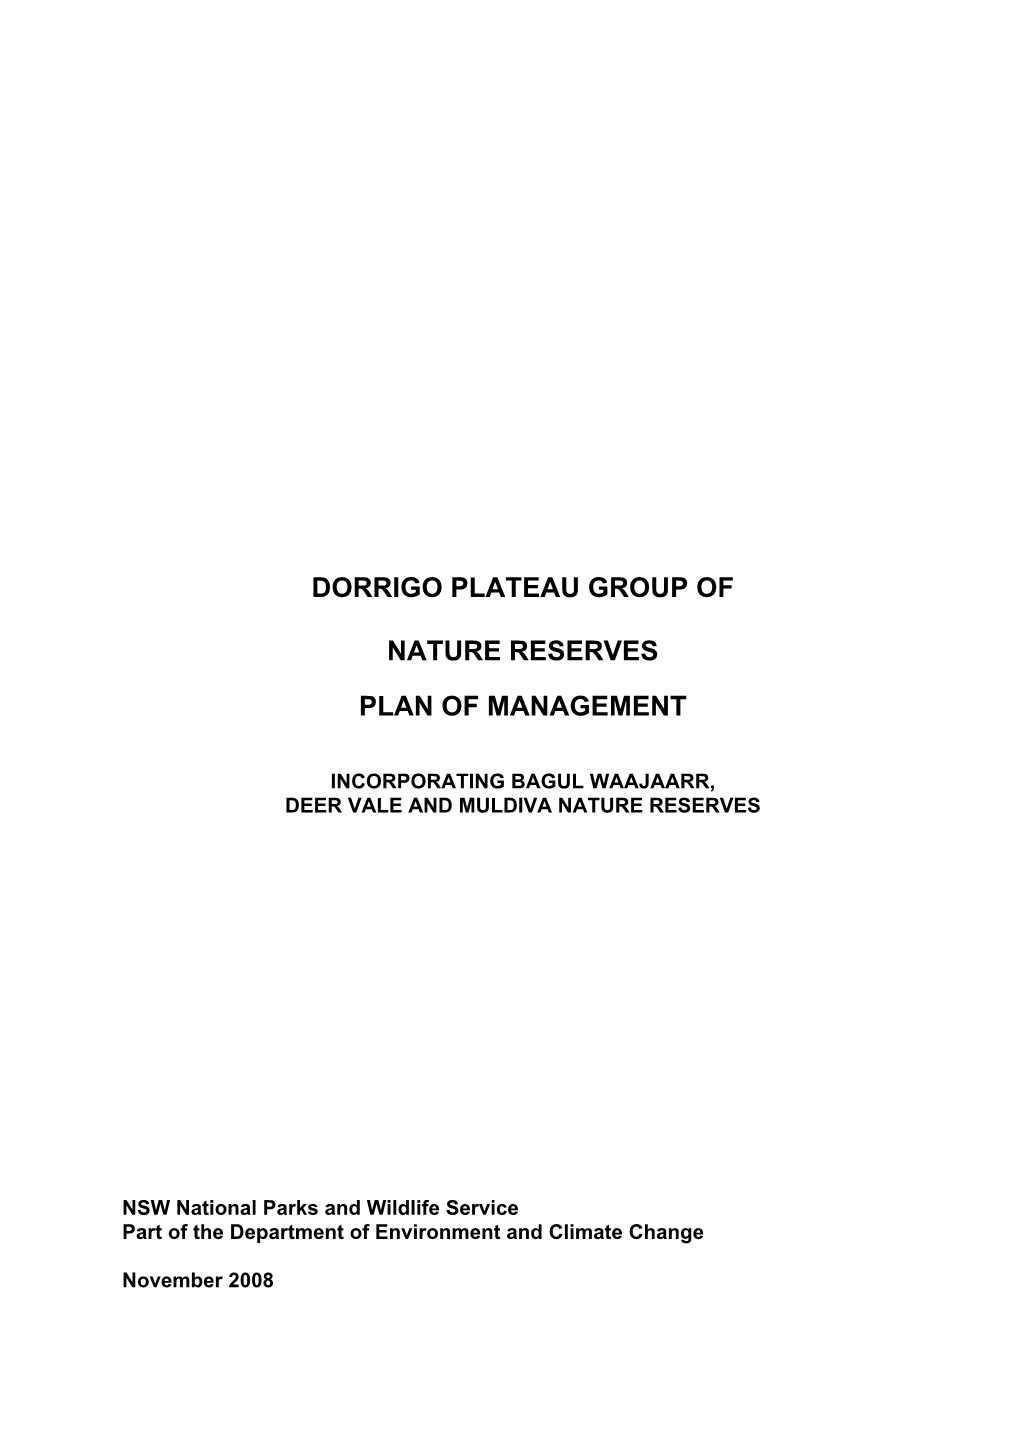 Dorrigo Plateau Group of Nature Reserves Plan Of